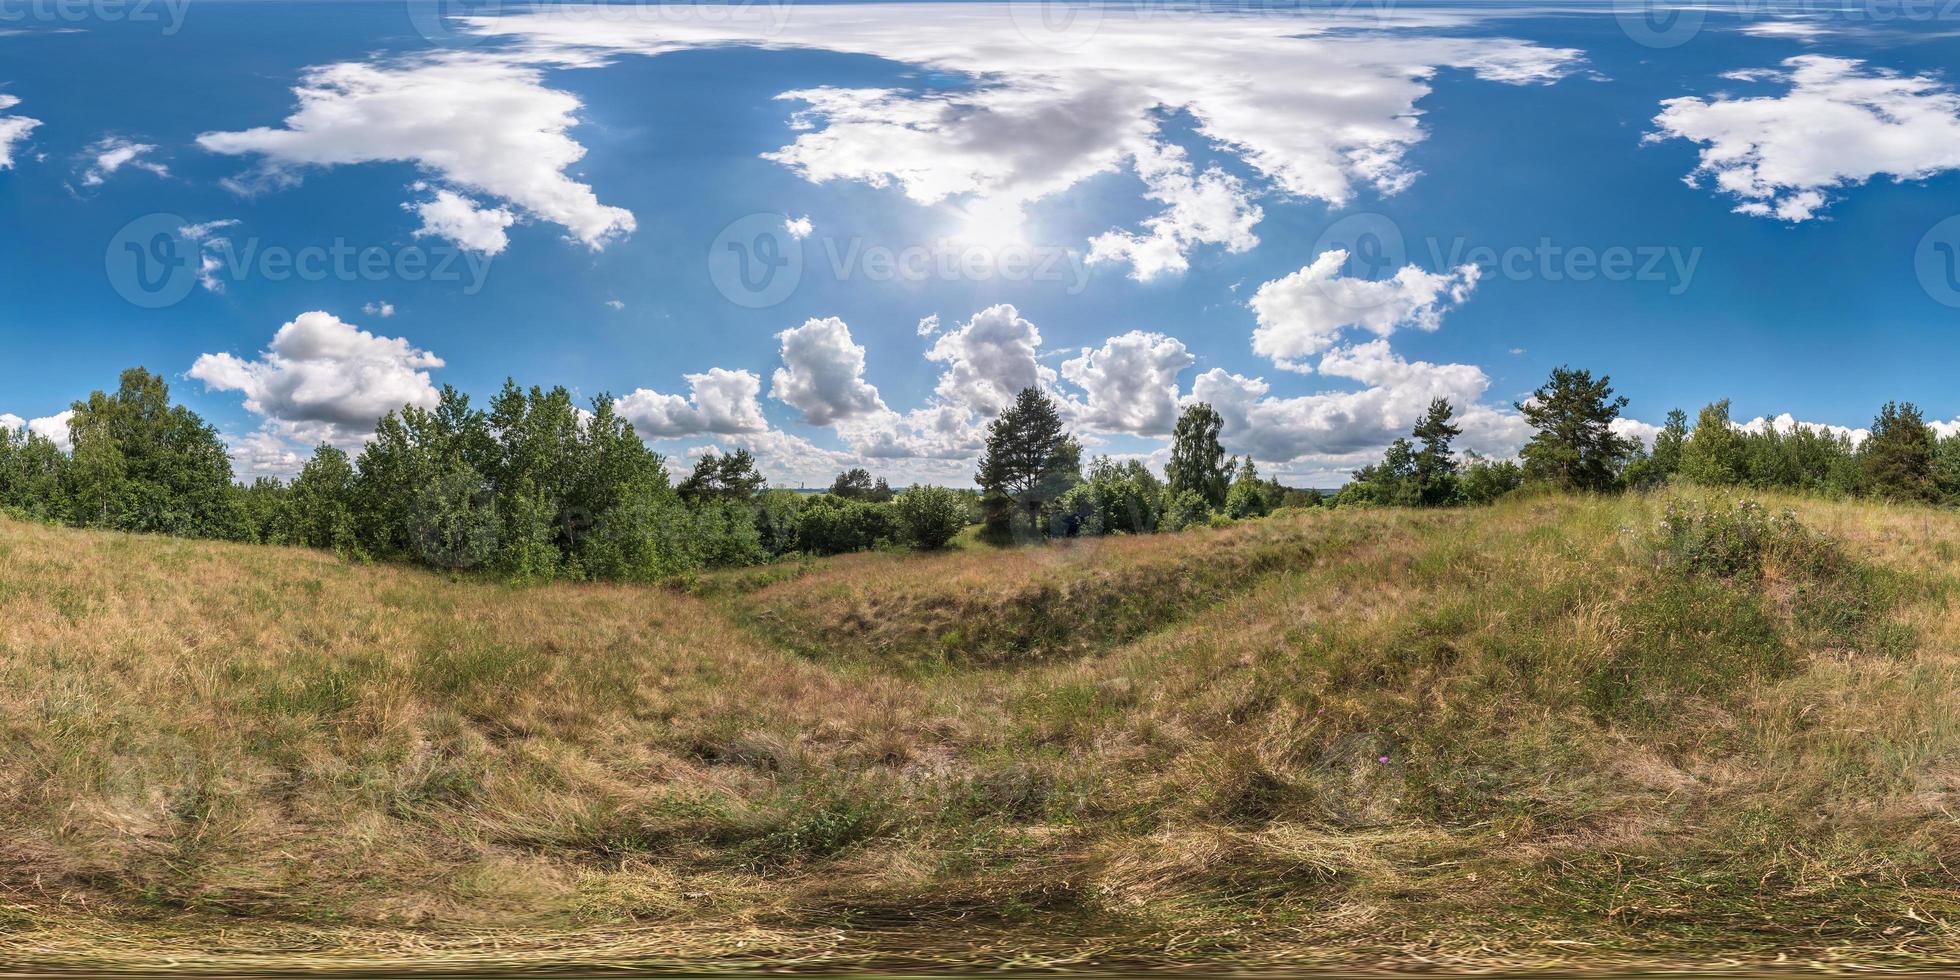 Panorama completo de 360 grados sin fisuras en proyección equidistante esférica equirectangular. vista panorámica en un campo en un hermoso día con bonitas nubes. skybox como fondo para contenido de realidad virtual foto